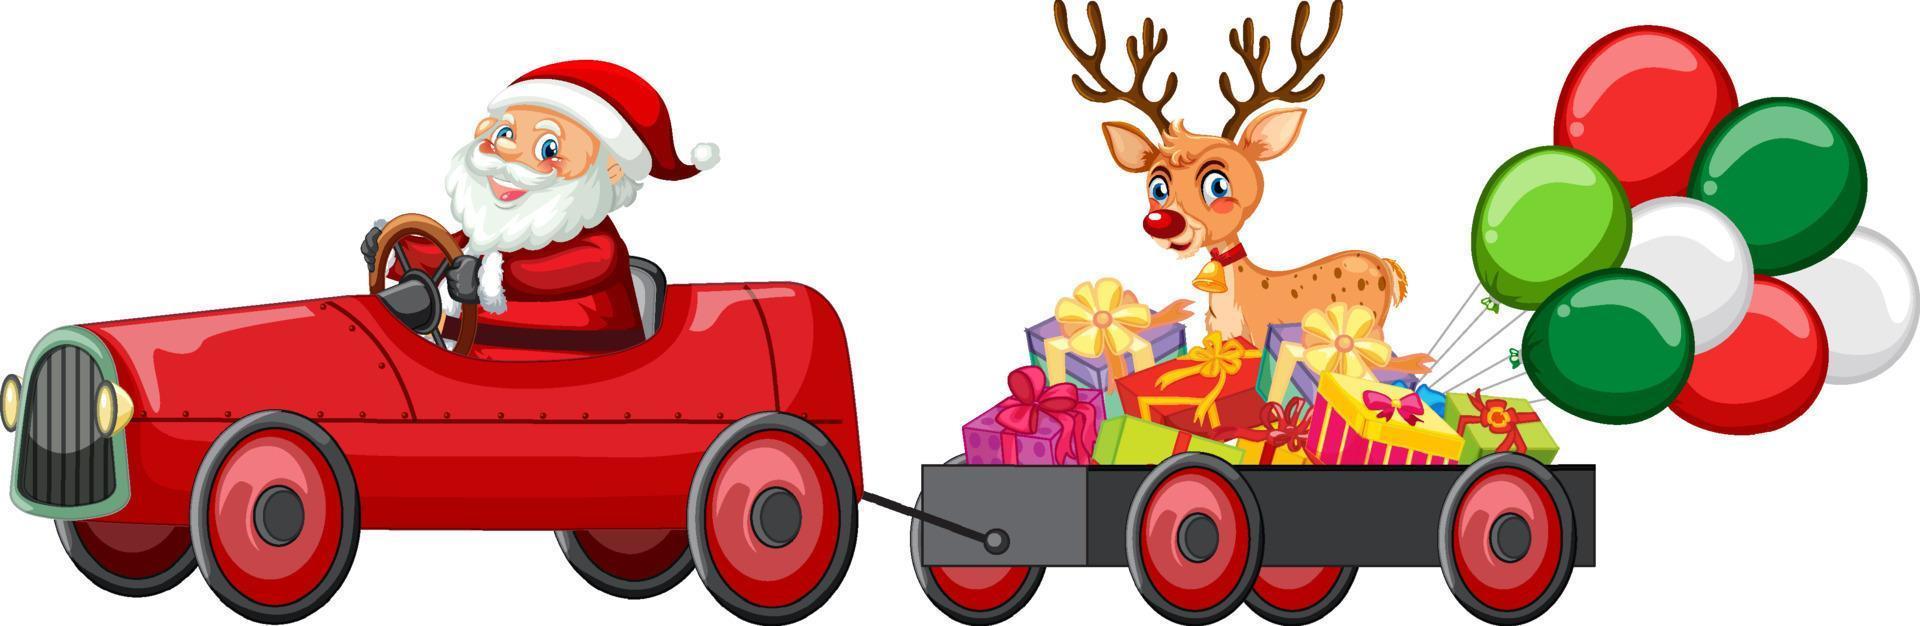 weihnachtsmann fährt auto zur lieferung von weihnachtsgeschenken vektor